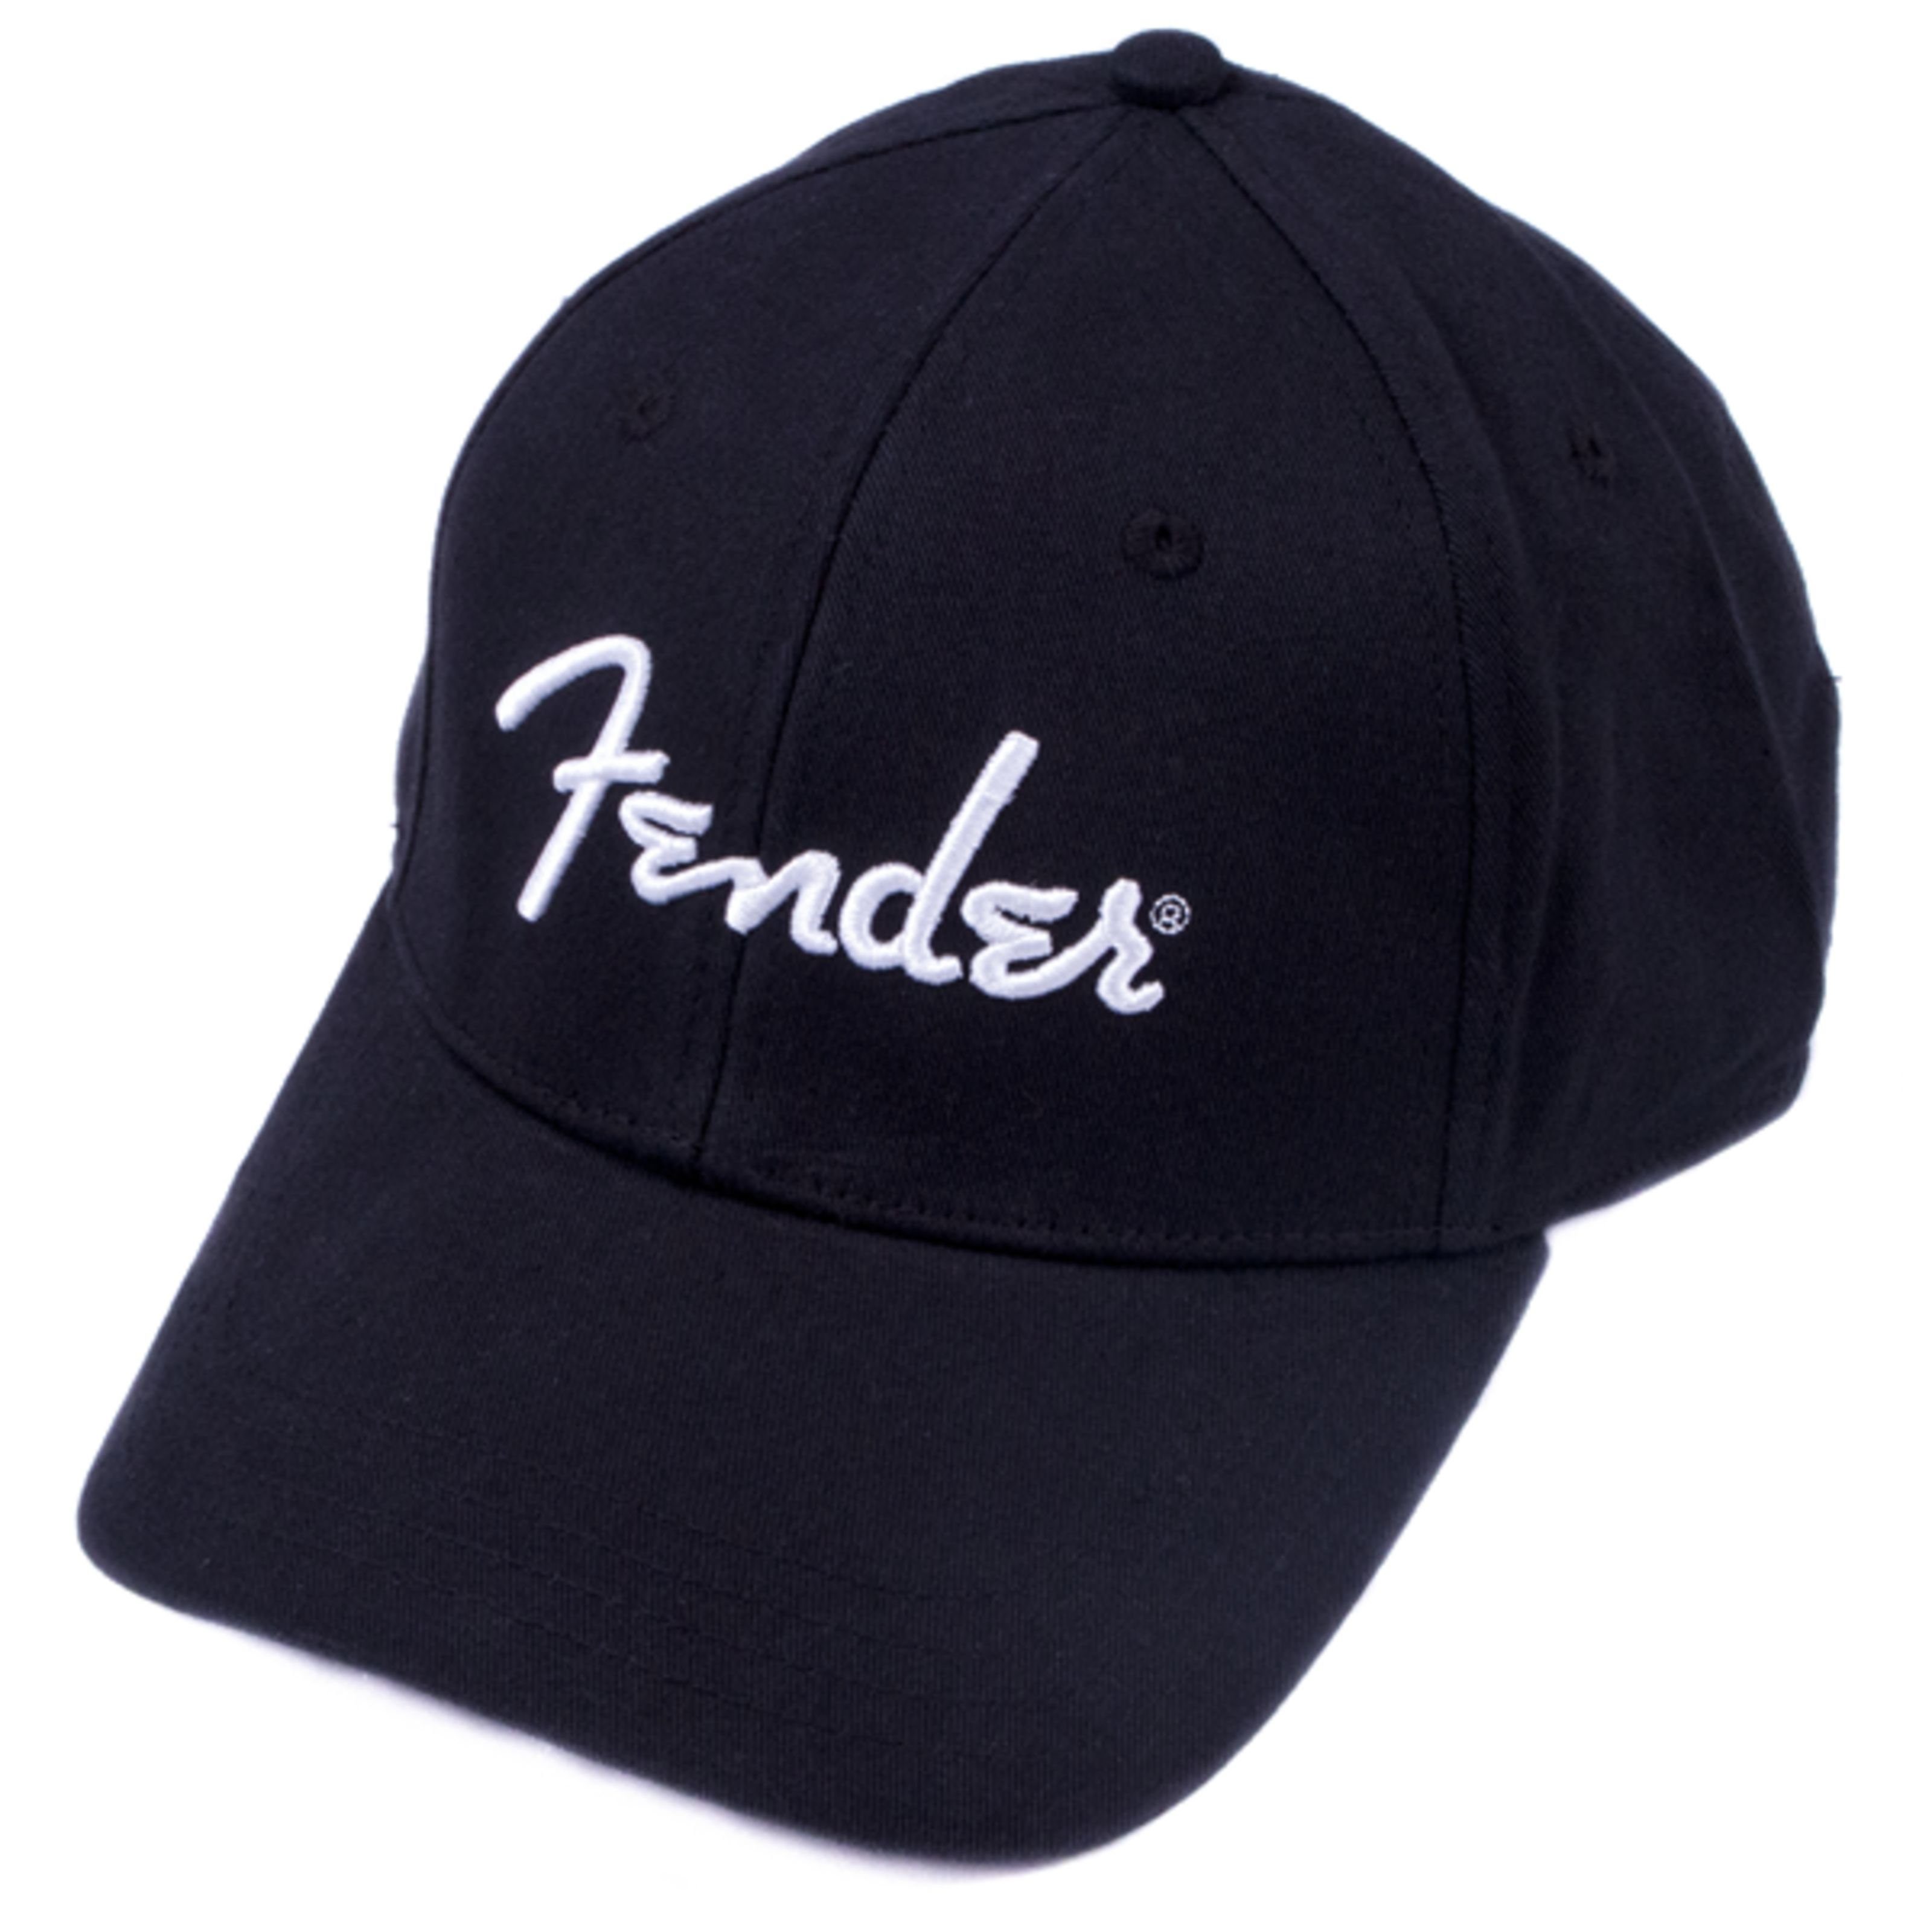 Fender Baseball Cap Kopfbedeckung - Original Cap